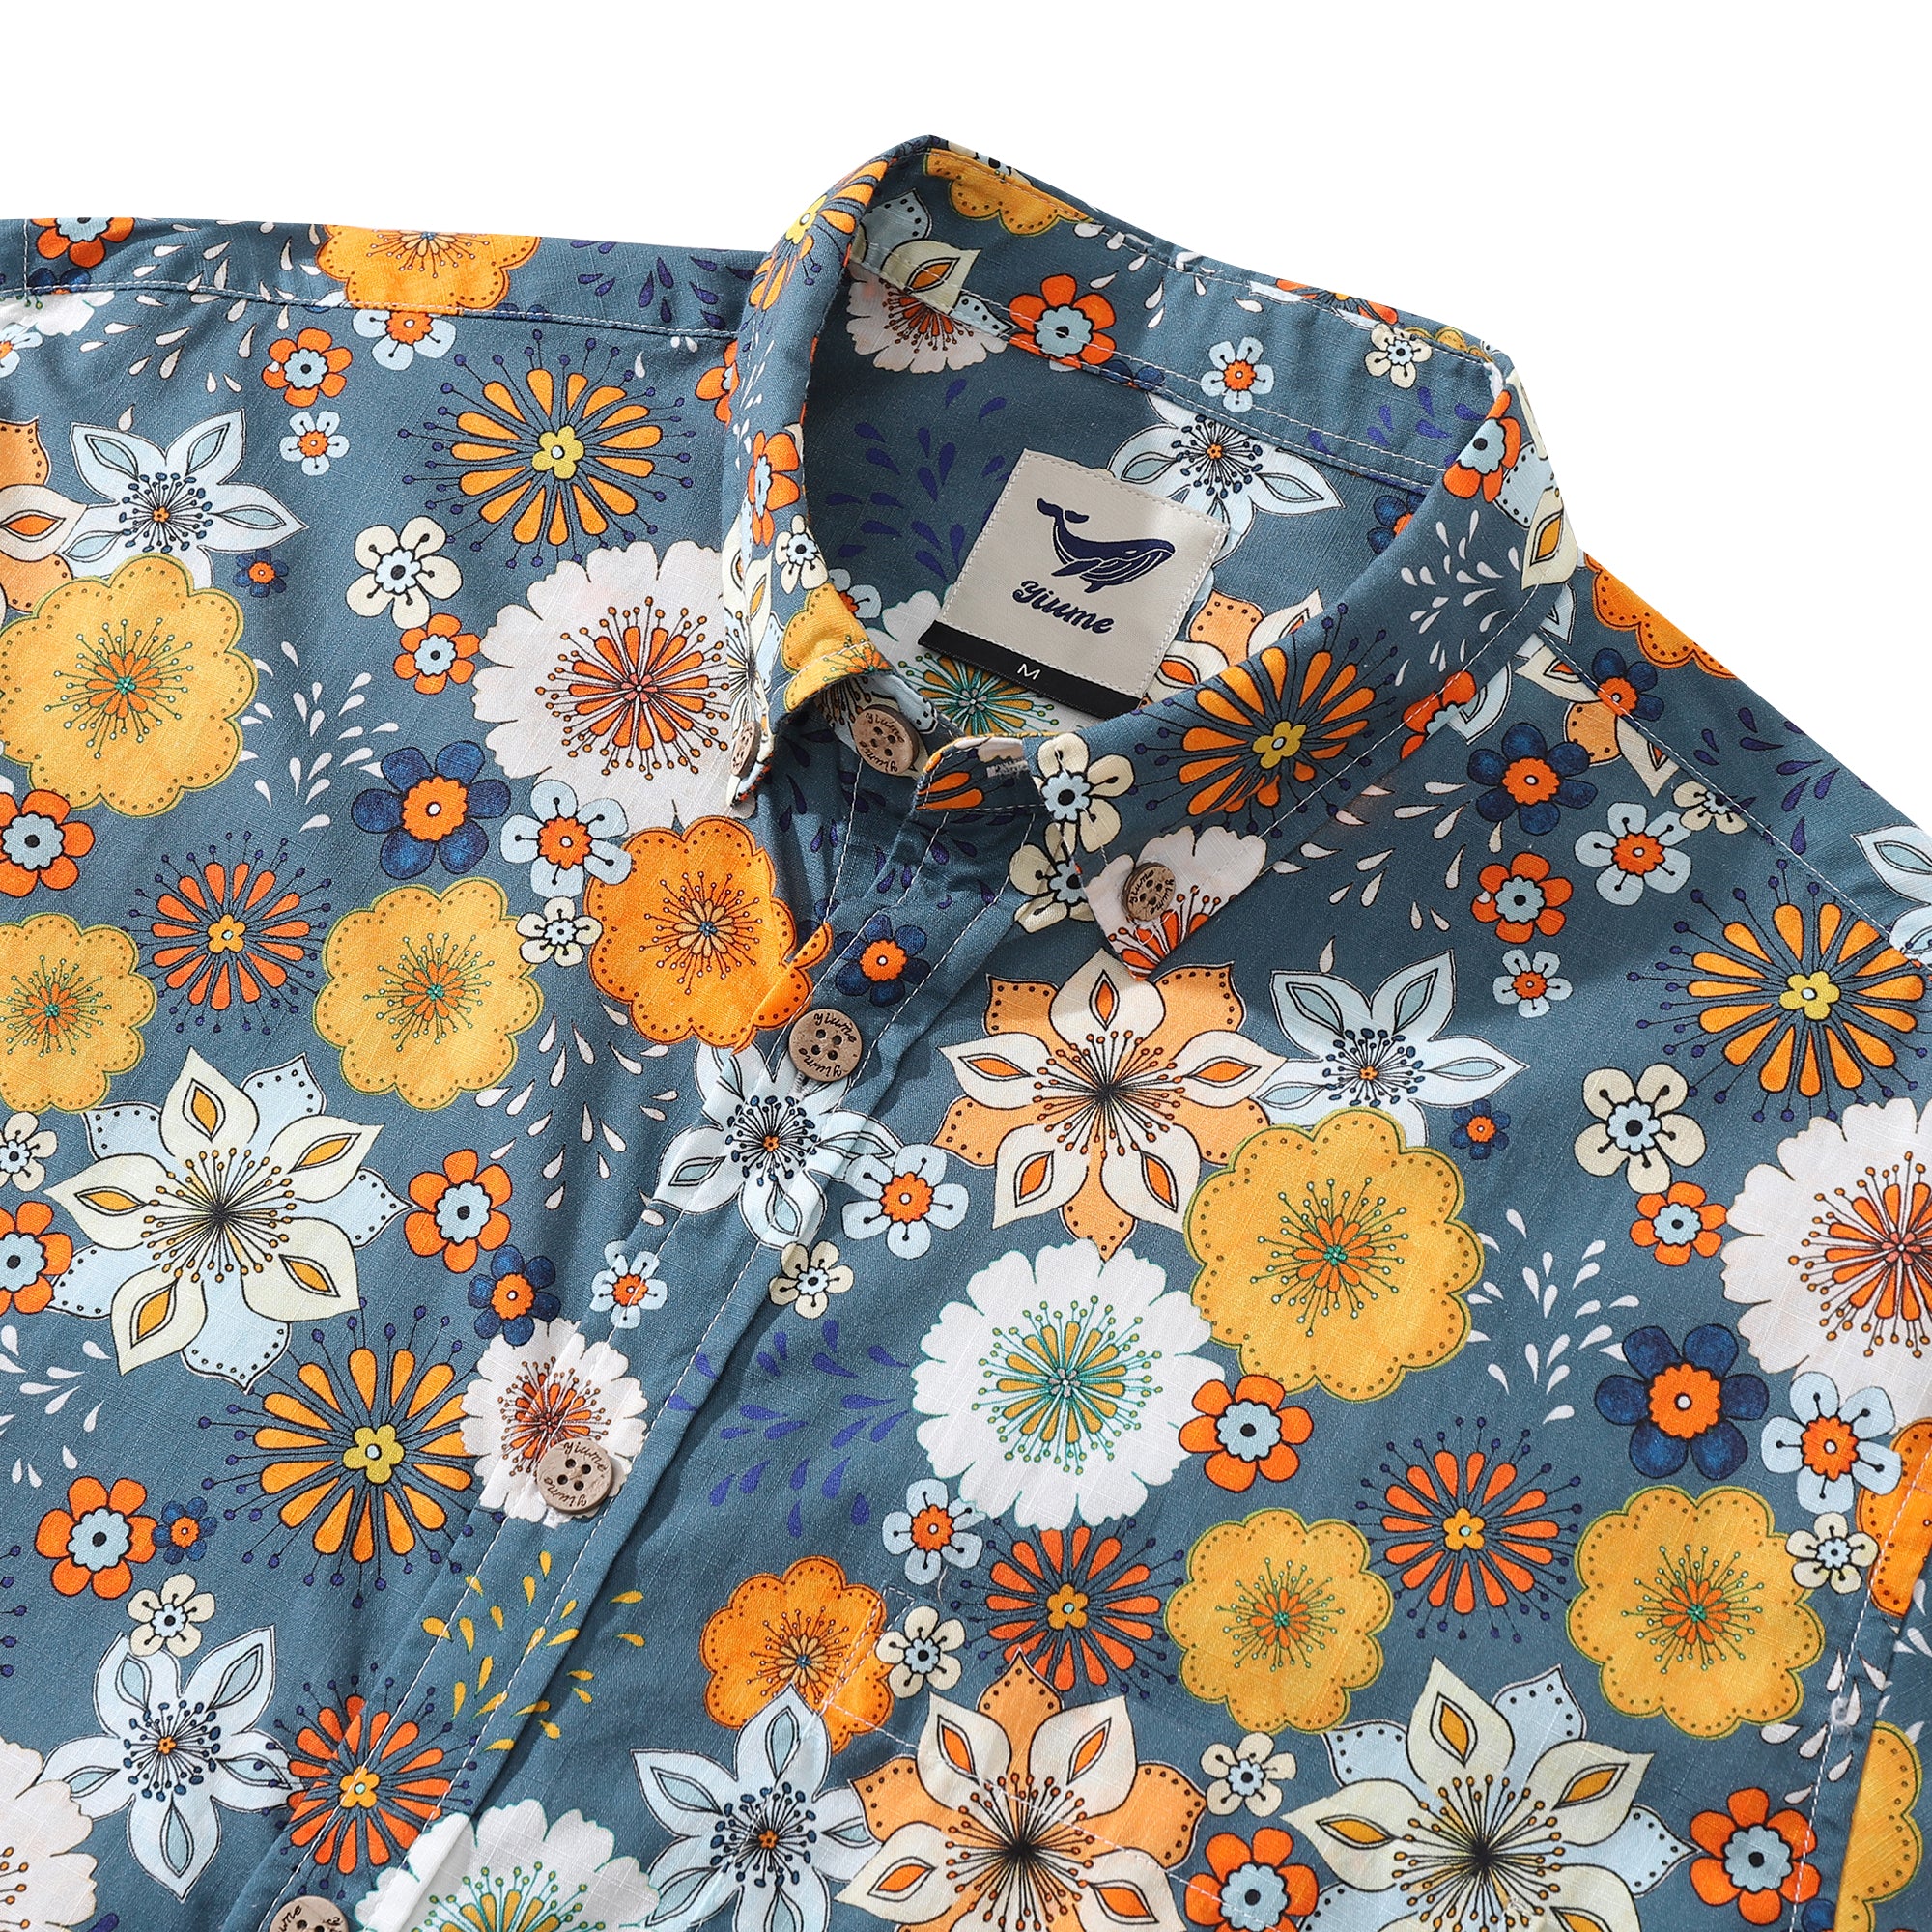 メンズ アロハシャツ 60年代 花柄 サマンサ オマリー コットン ボタンダウン 長袖 アロハシャツ